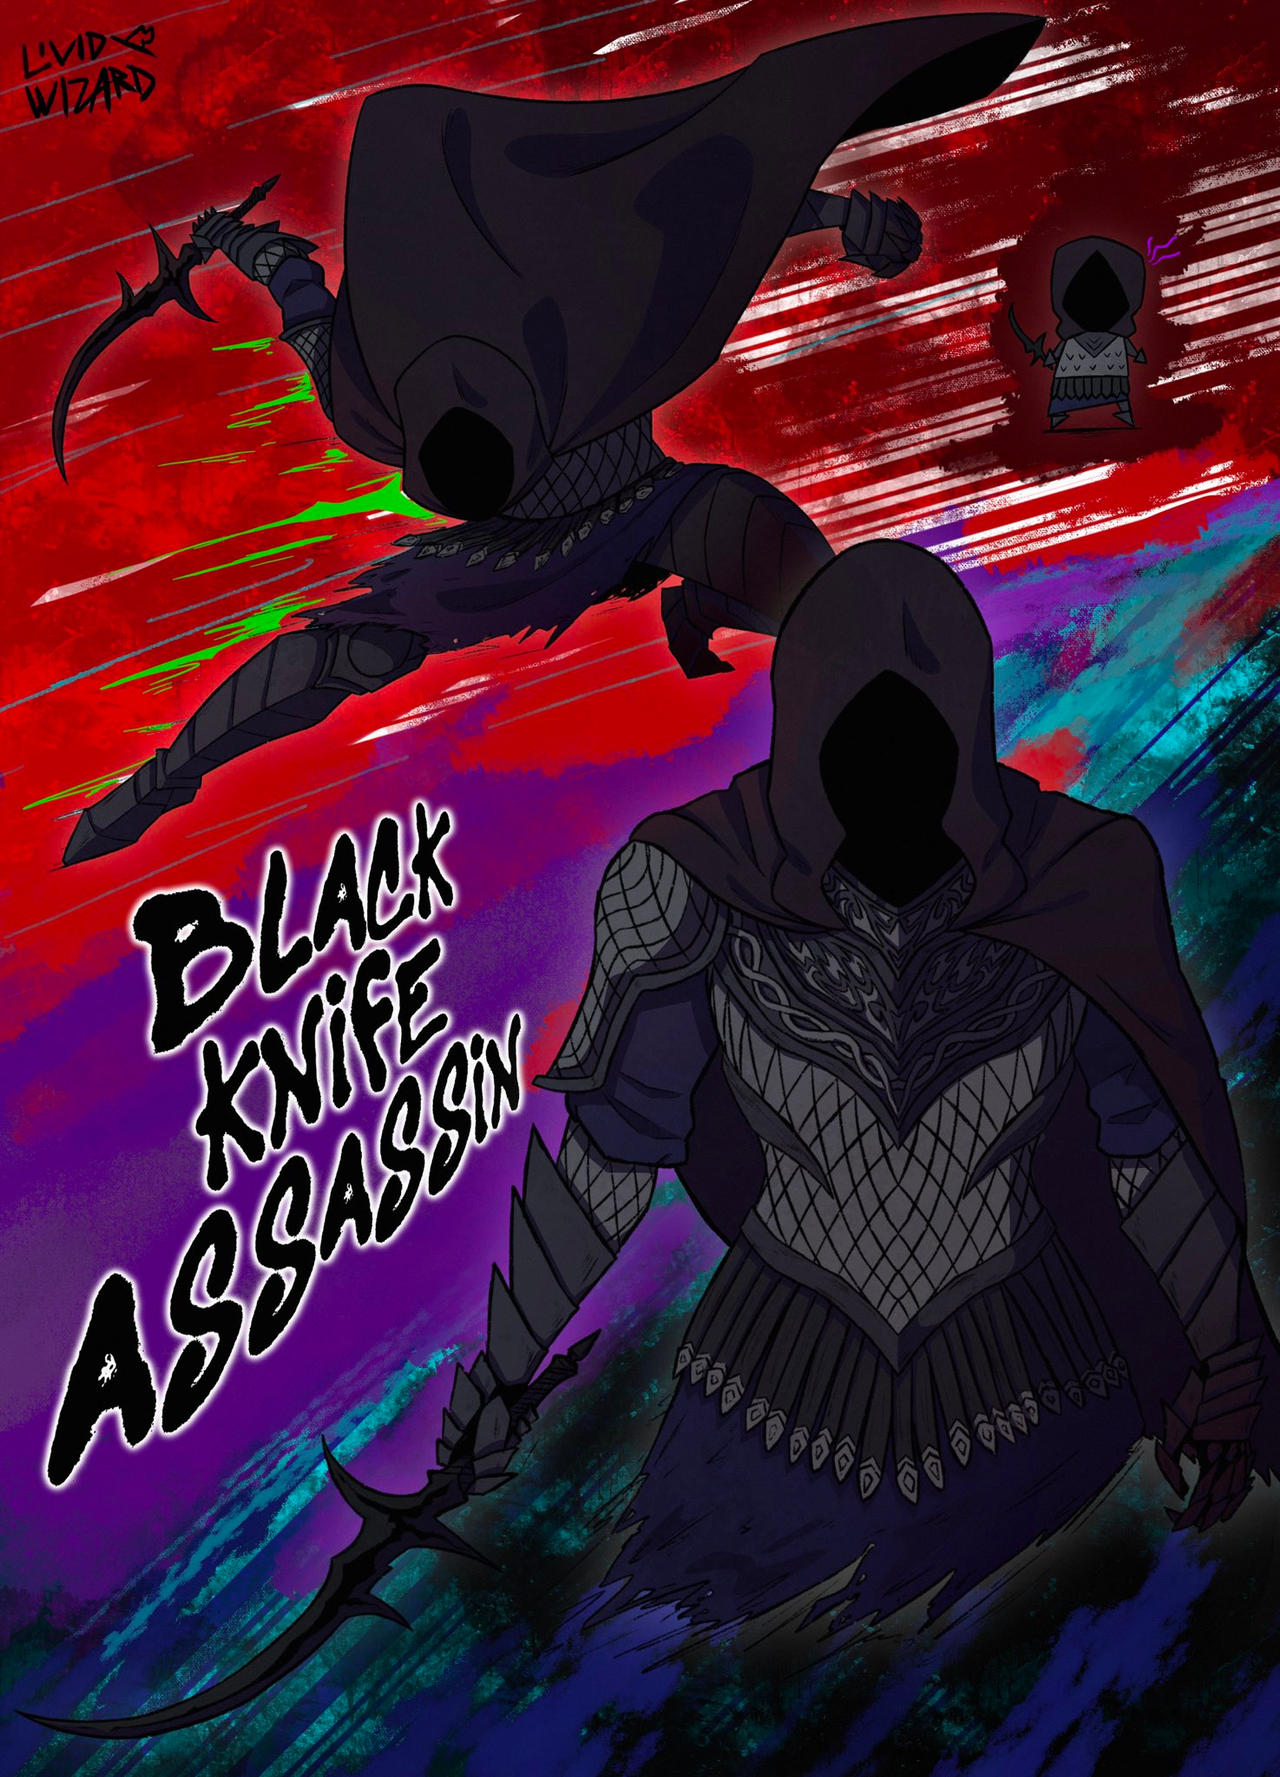 Lesser Black Knife Assassin